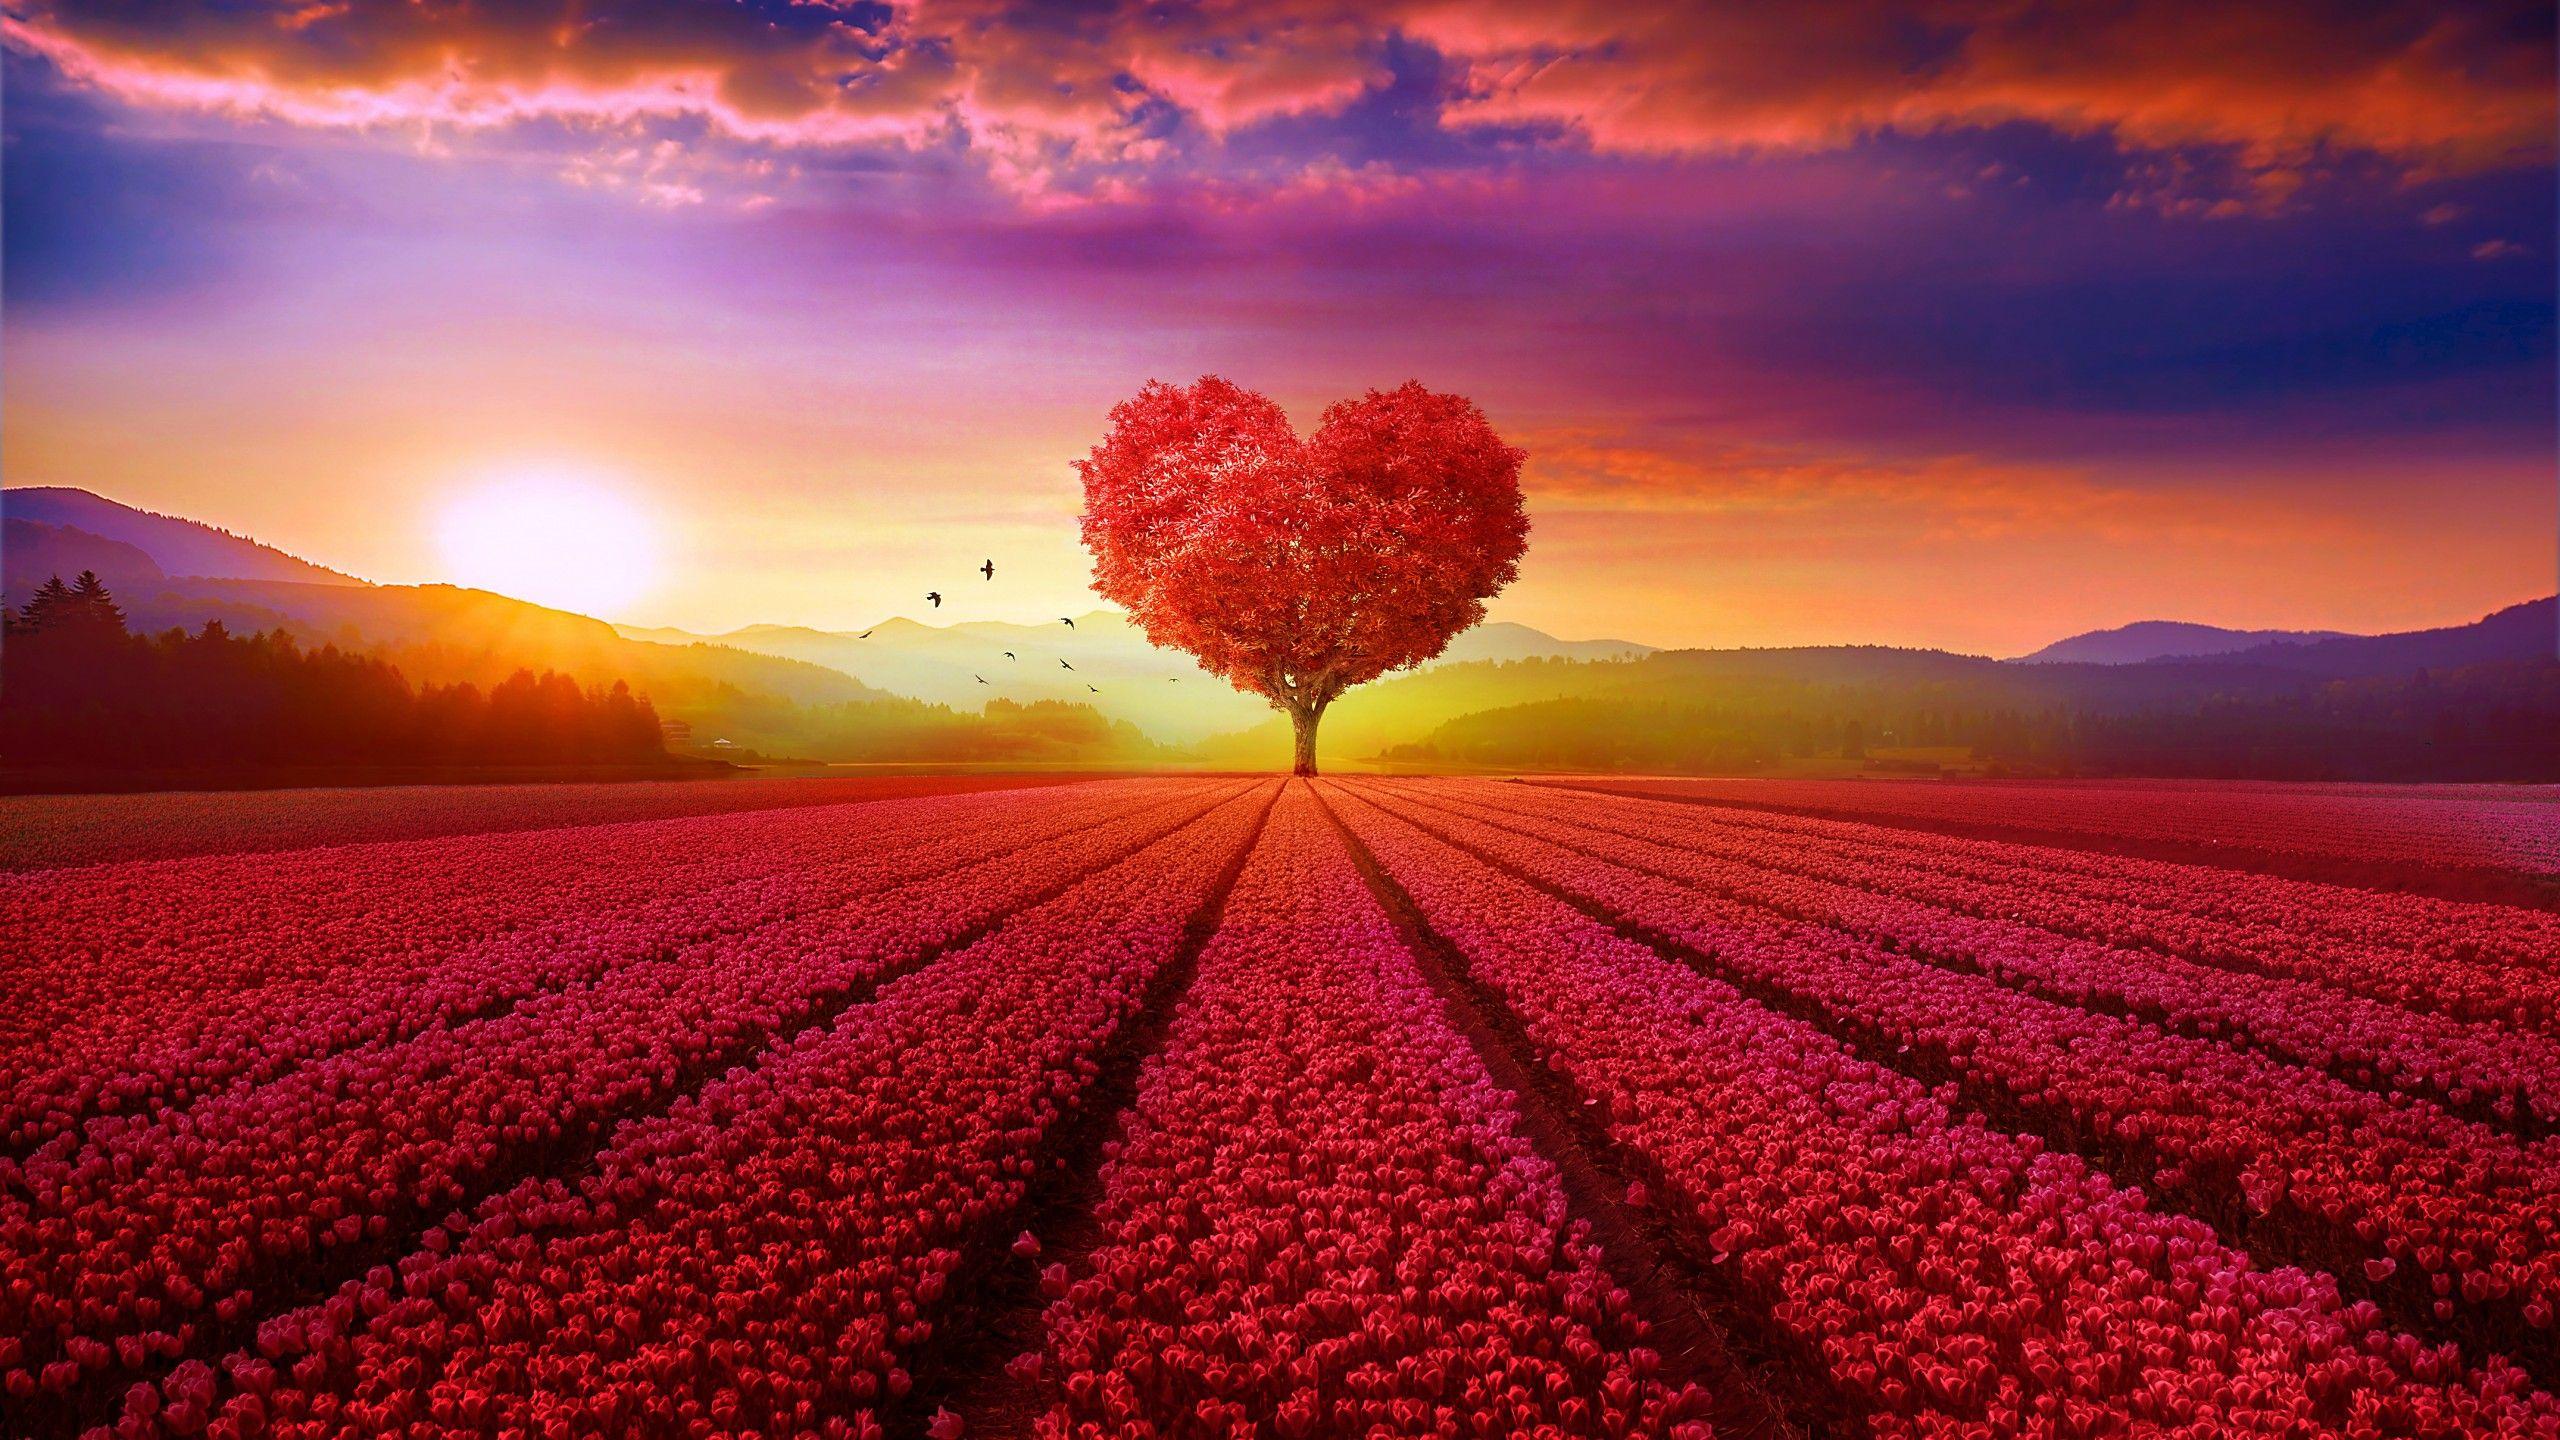 2560x1440 Hình nền Trái tim tình yêu, Cây, Vườn hoa, Cây trái tim, bình minh, Phong cảnh, Đỏ, độ phân giải cao, Thiên nhiên ,.  Hình nền cho iPhone, Android, Di động và Máy tính để bàn